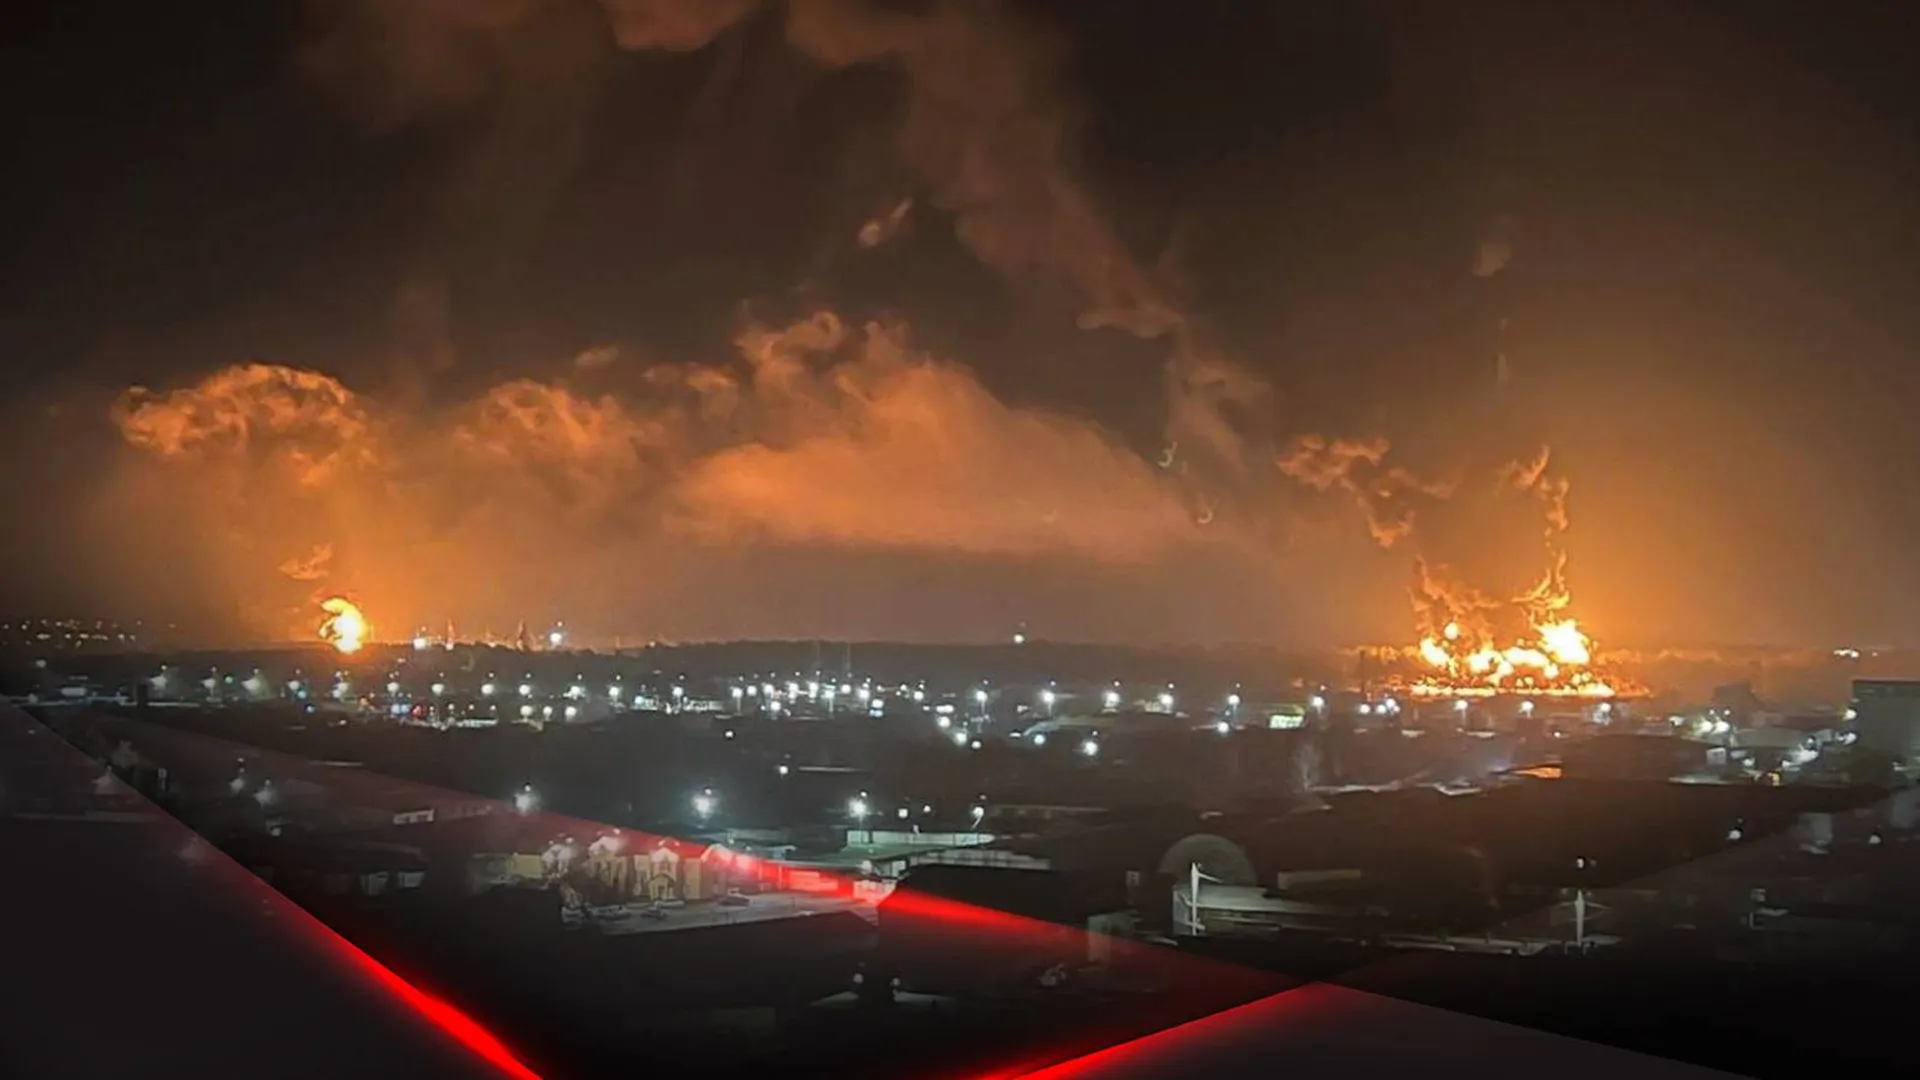 Пожар на нефтебазе в Брянске